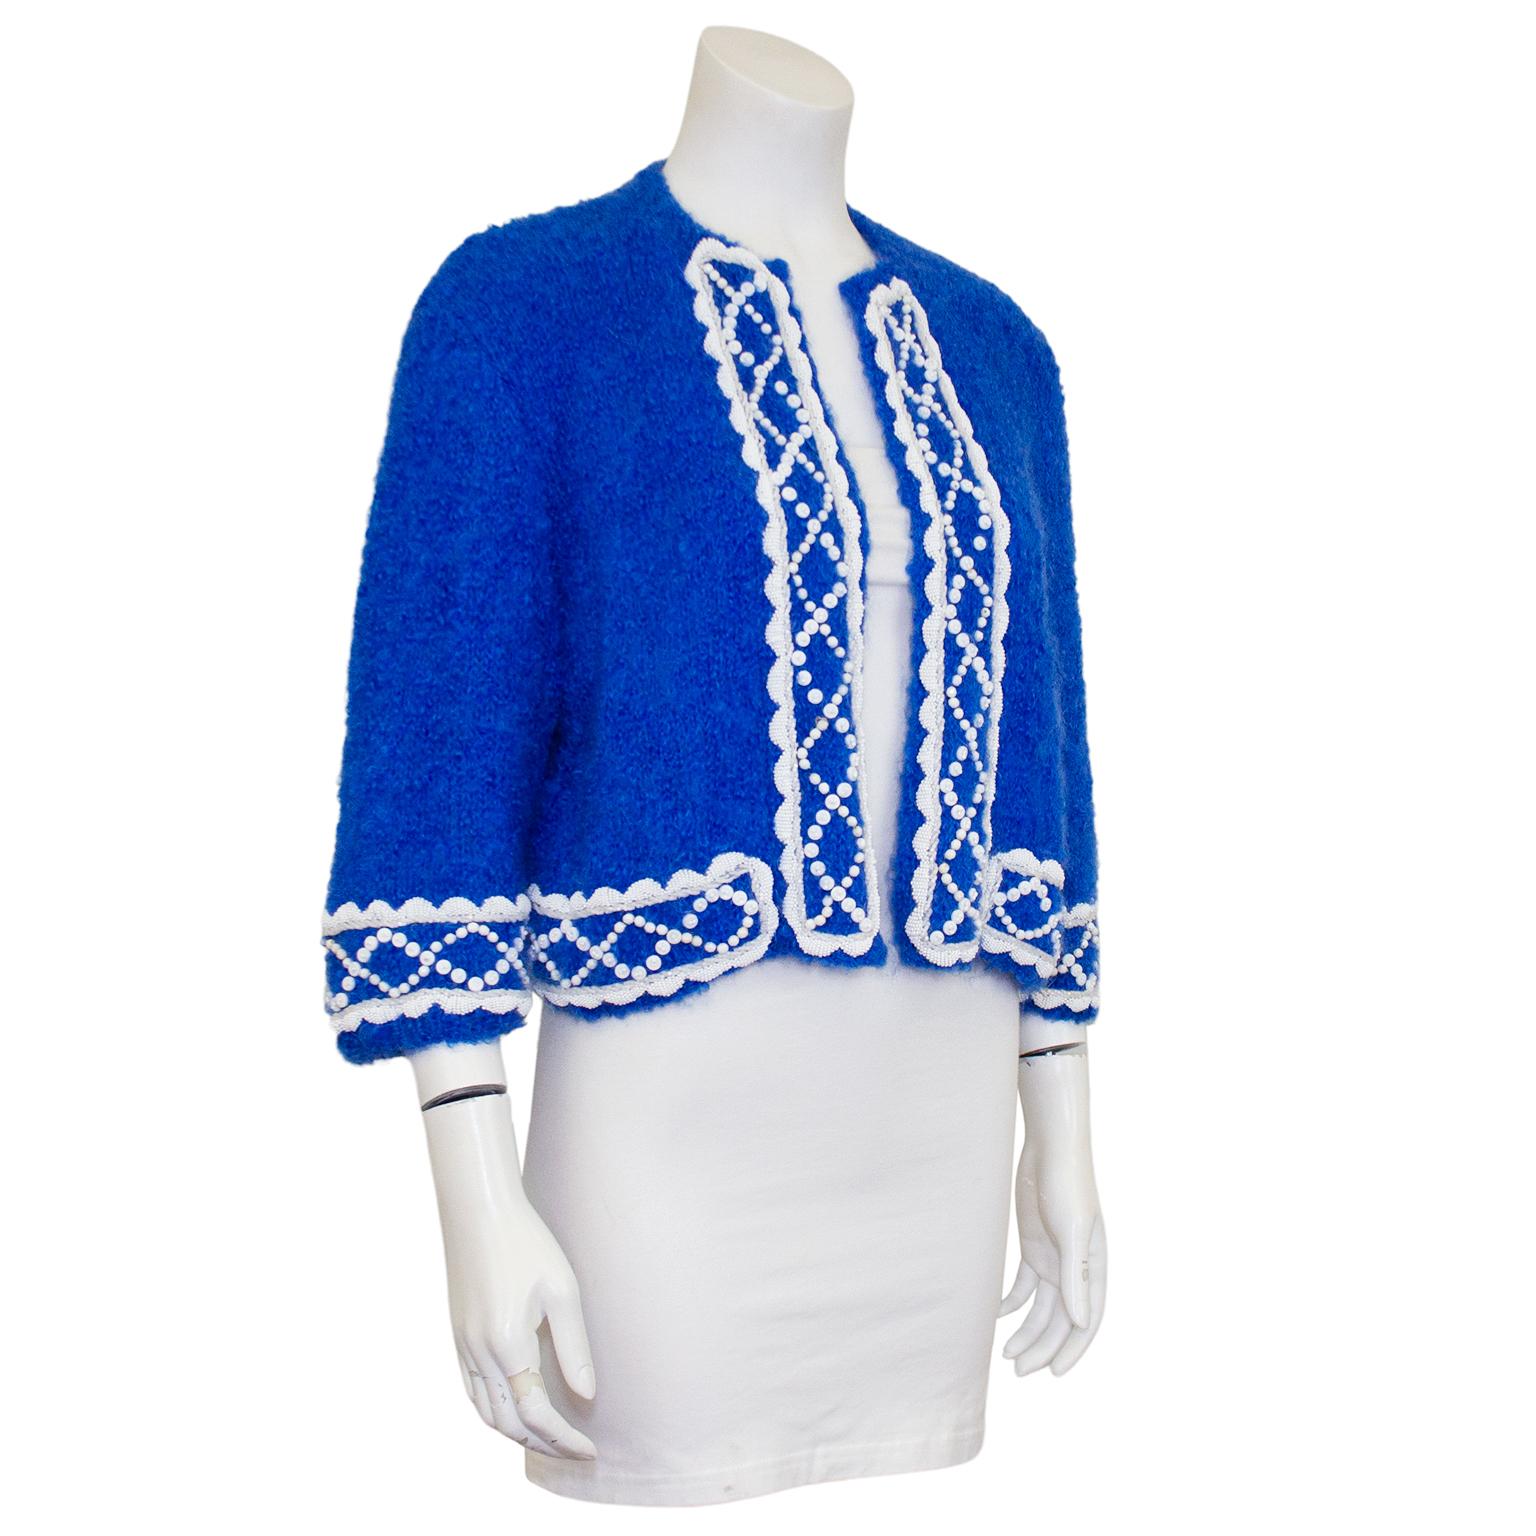 cardigan boléro bleu royal en mohair tricoté sur mesure dans les années 1960. La touche supplémentaire parfaite pour vos cotons d'été. boléro en mohair des années 1960 à manches 3/4 avec garniture de perles blanches cousues à la main. C'est une